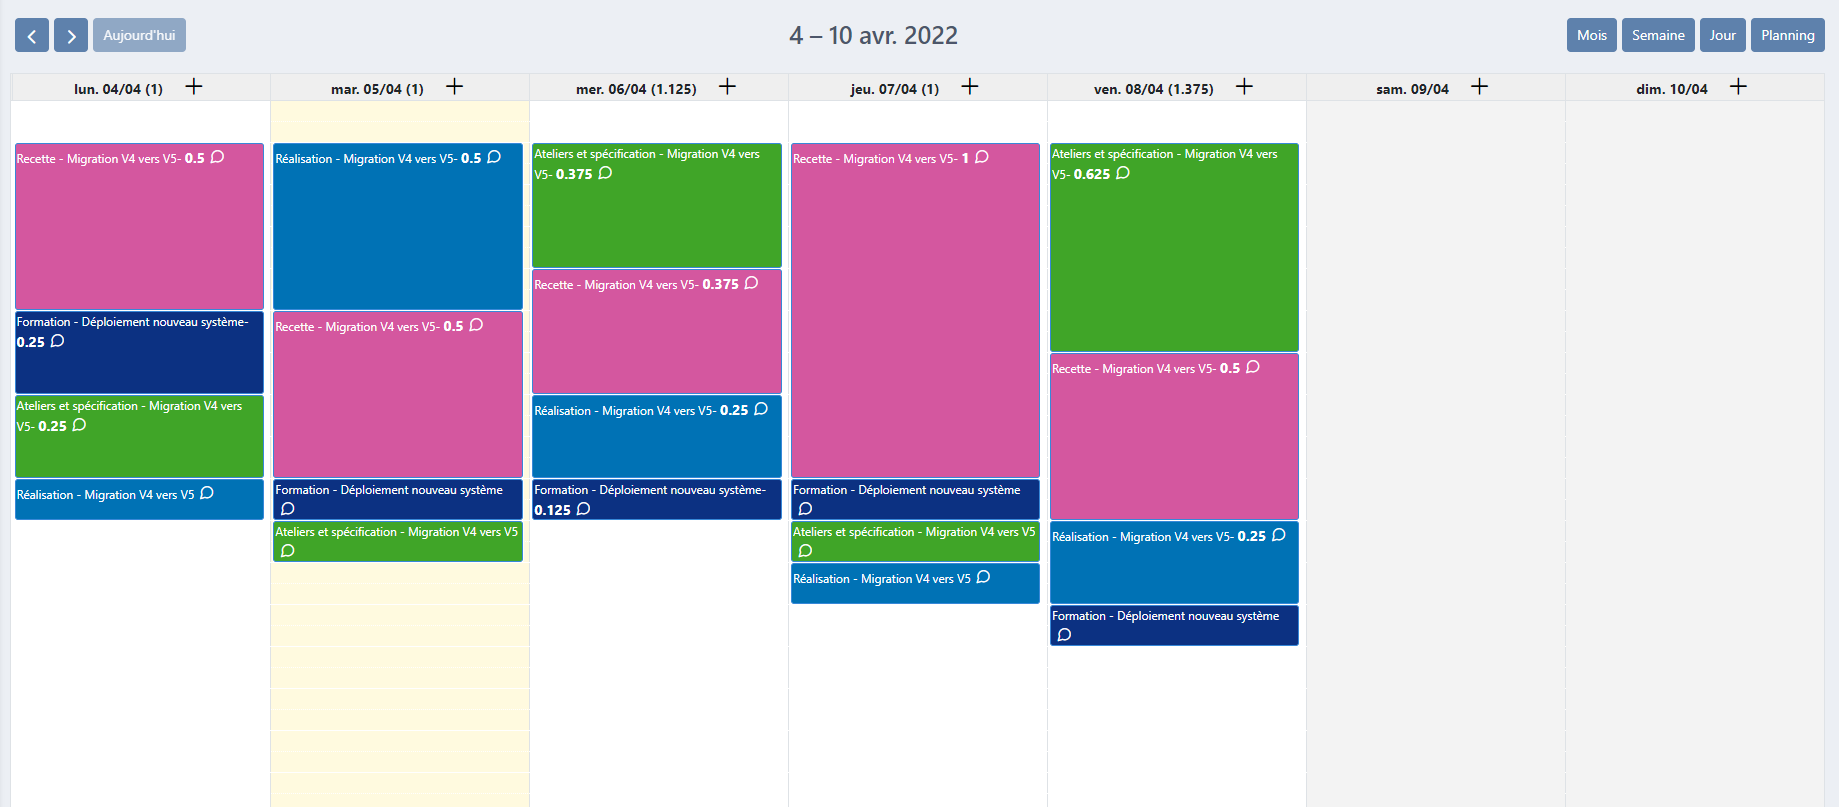 Calendar of activities